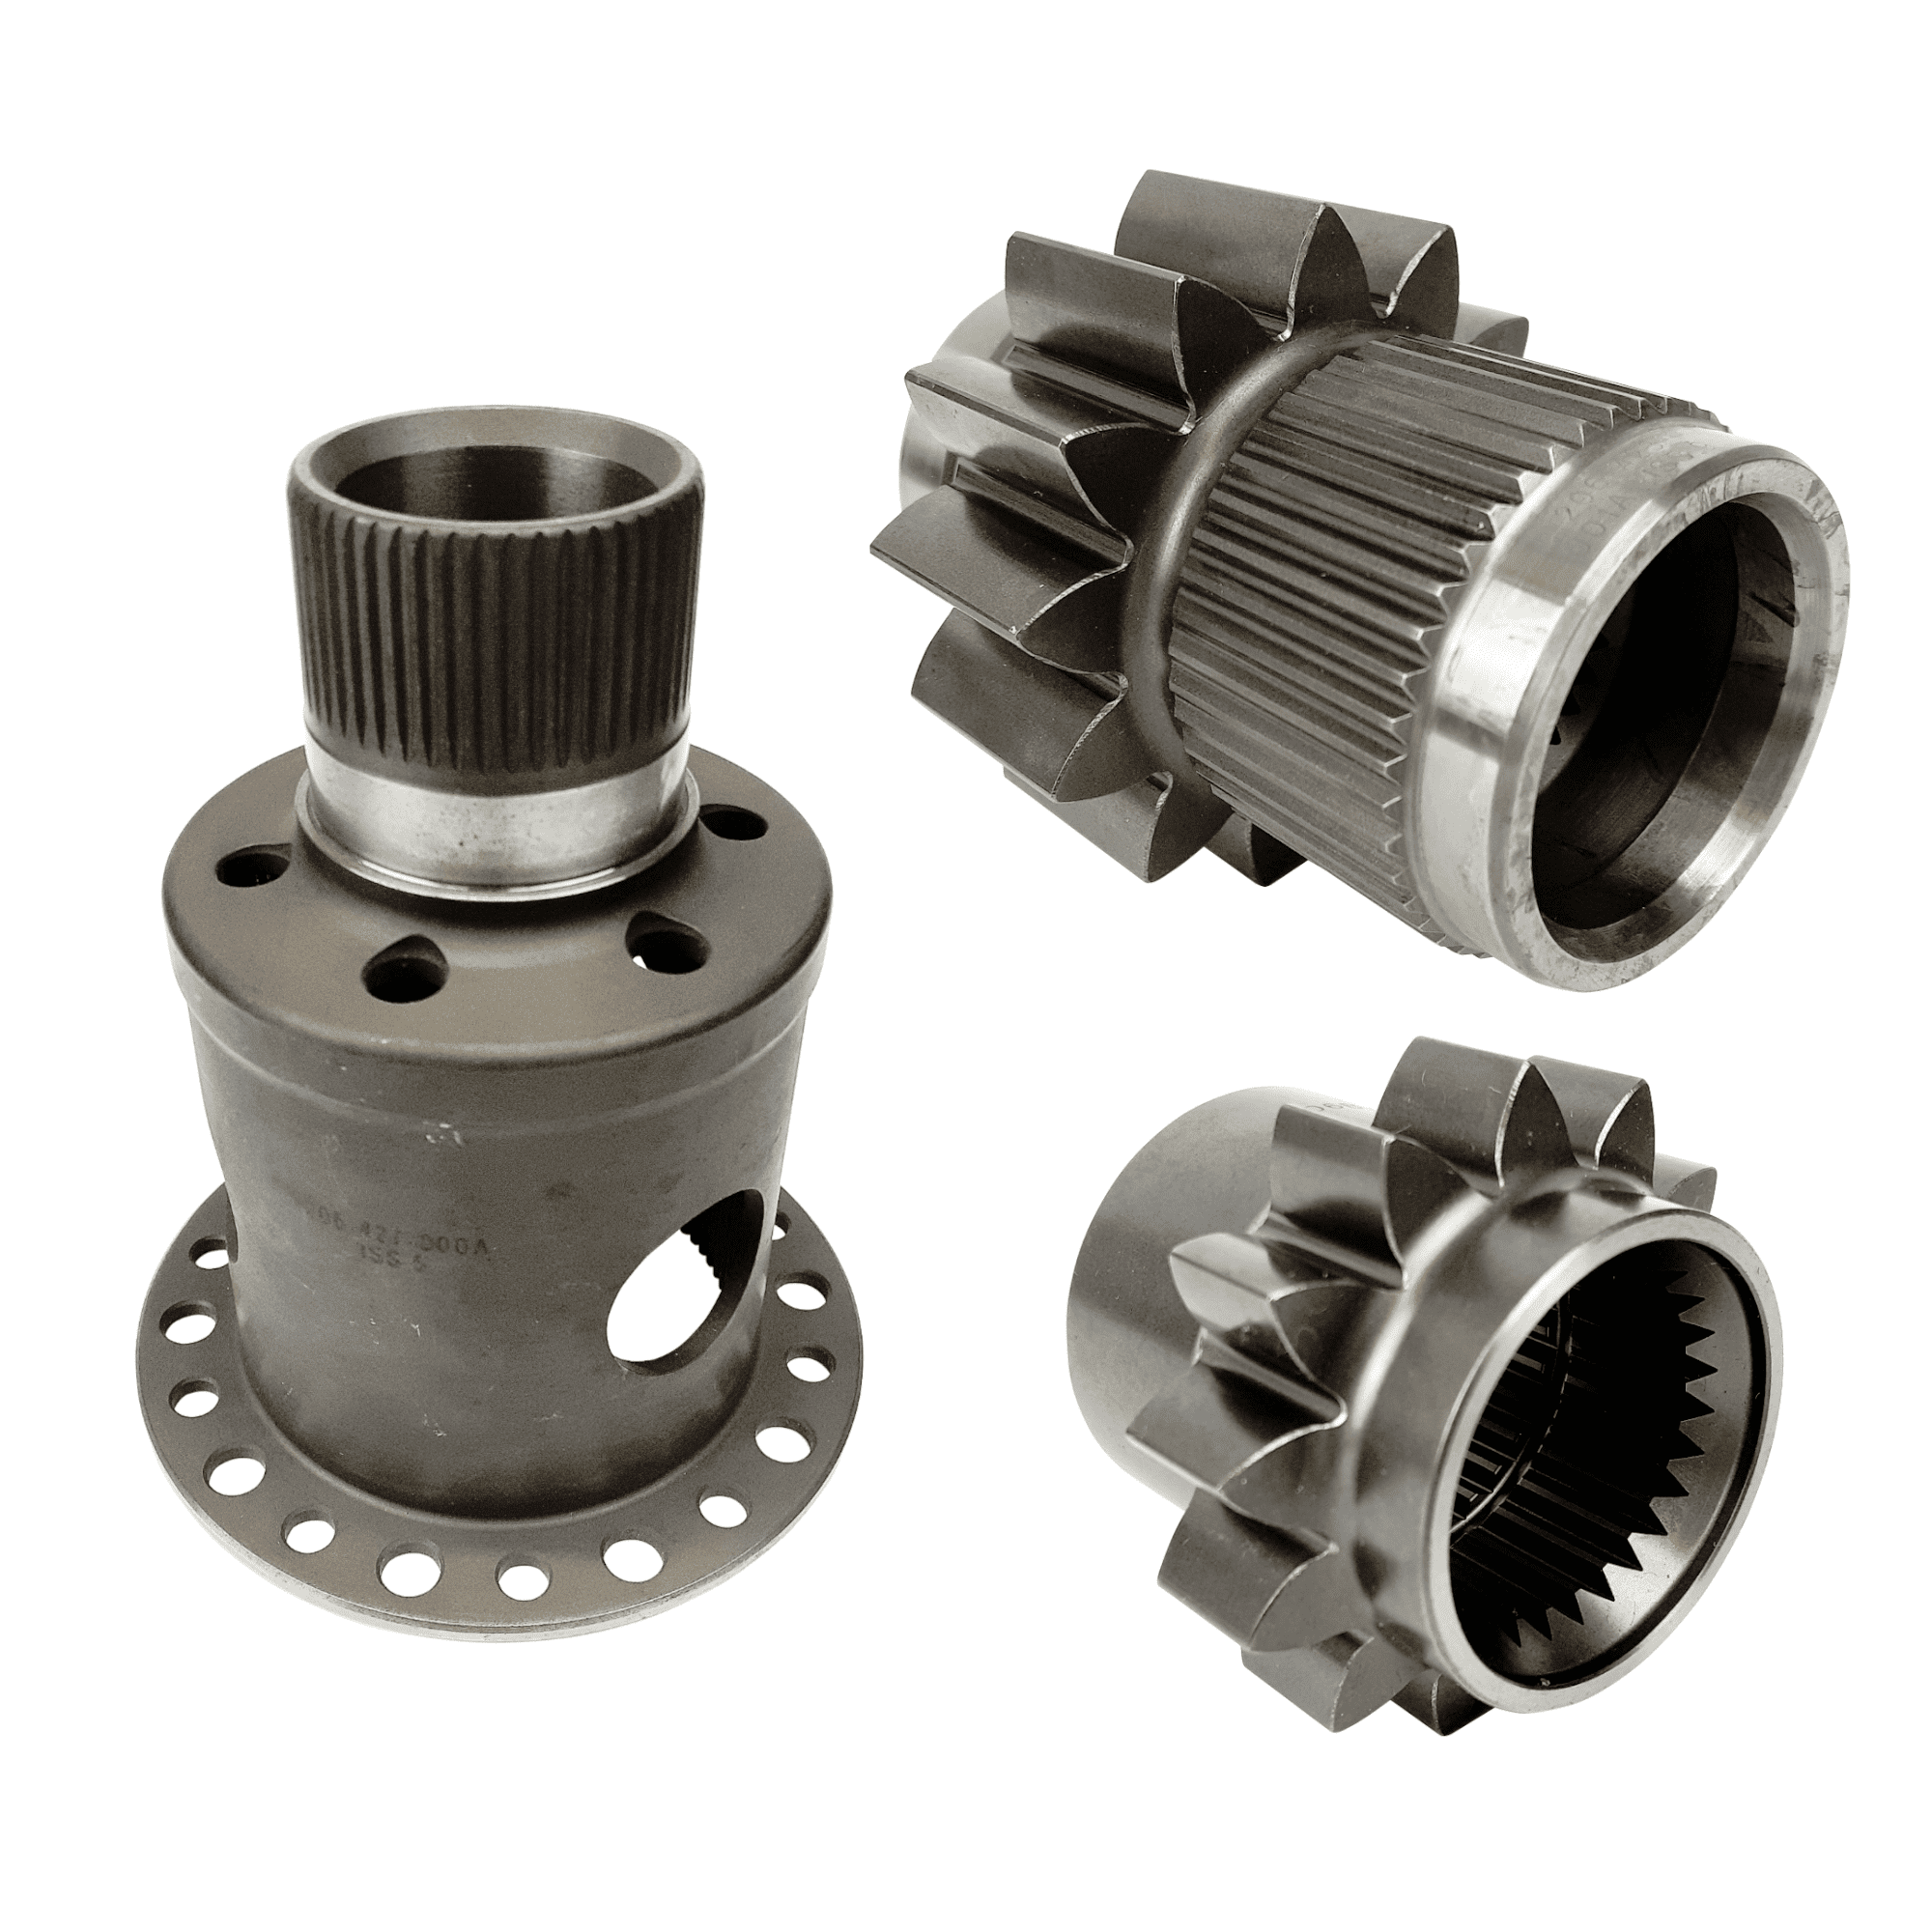 x-trac-206-306-getriebe-ersatzteile-original-teile-fahrzeugteile-tiebling-gross-klein-sperre-gehaeuse-deckel-lager-differenzial